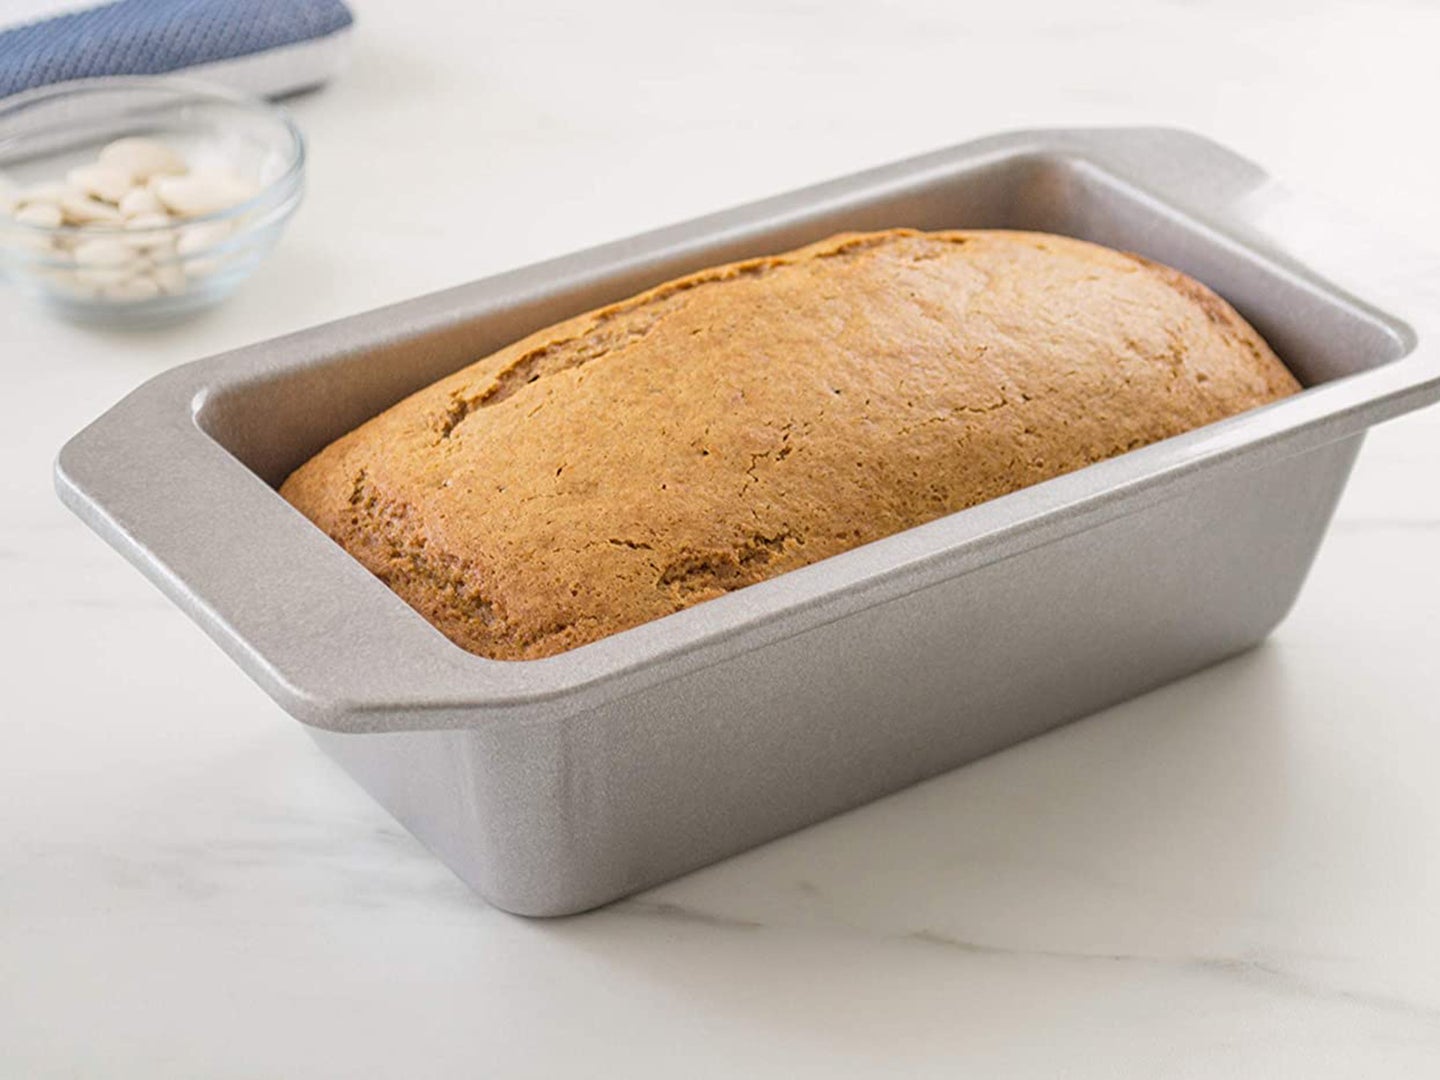 Bread in a pan